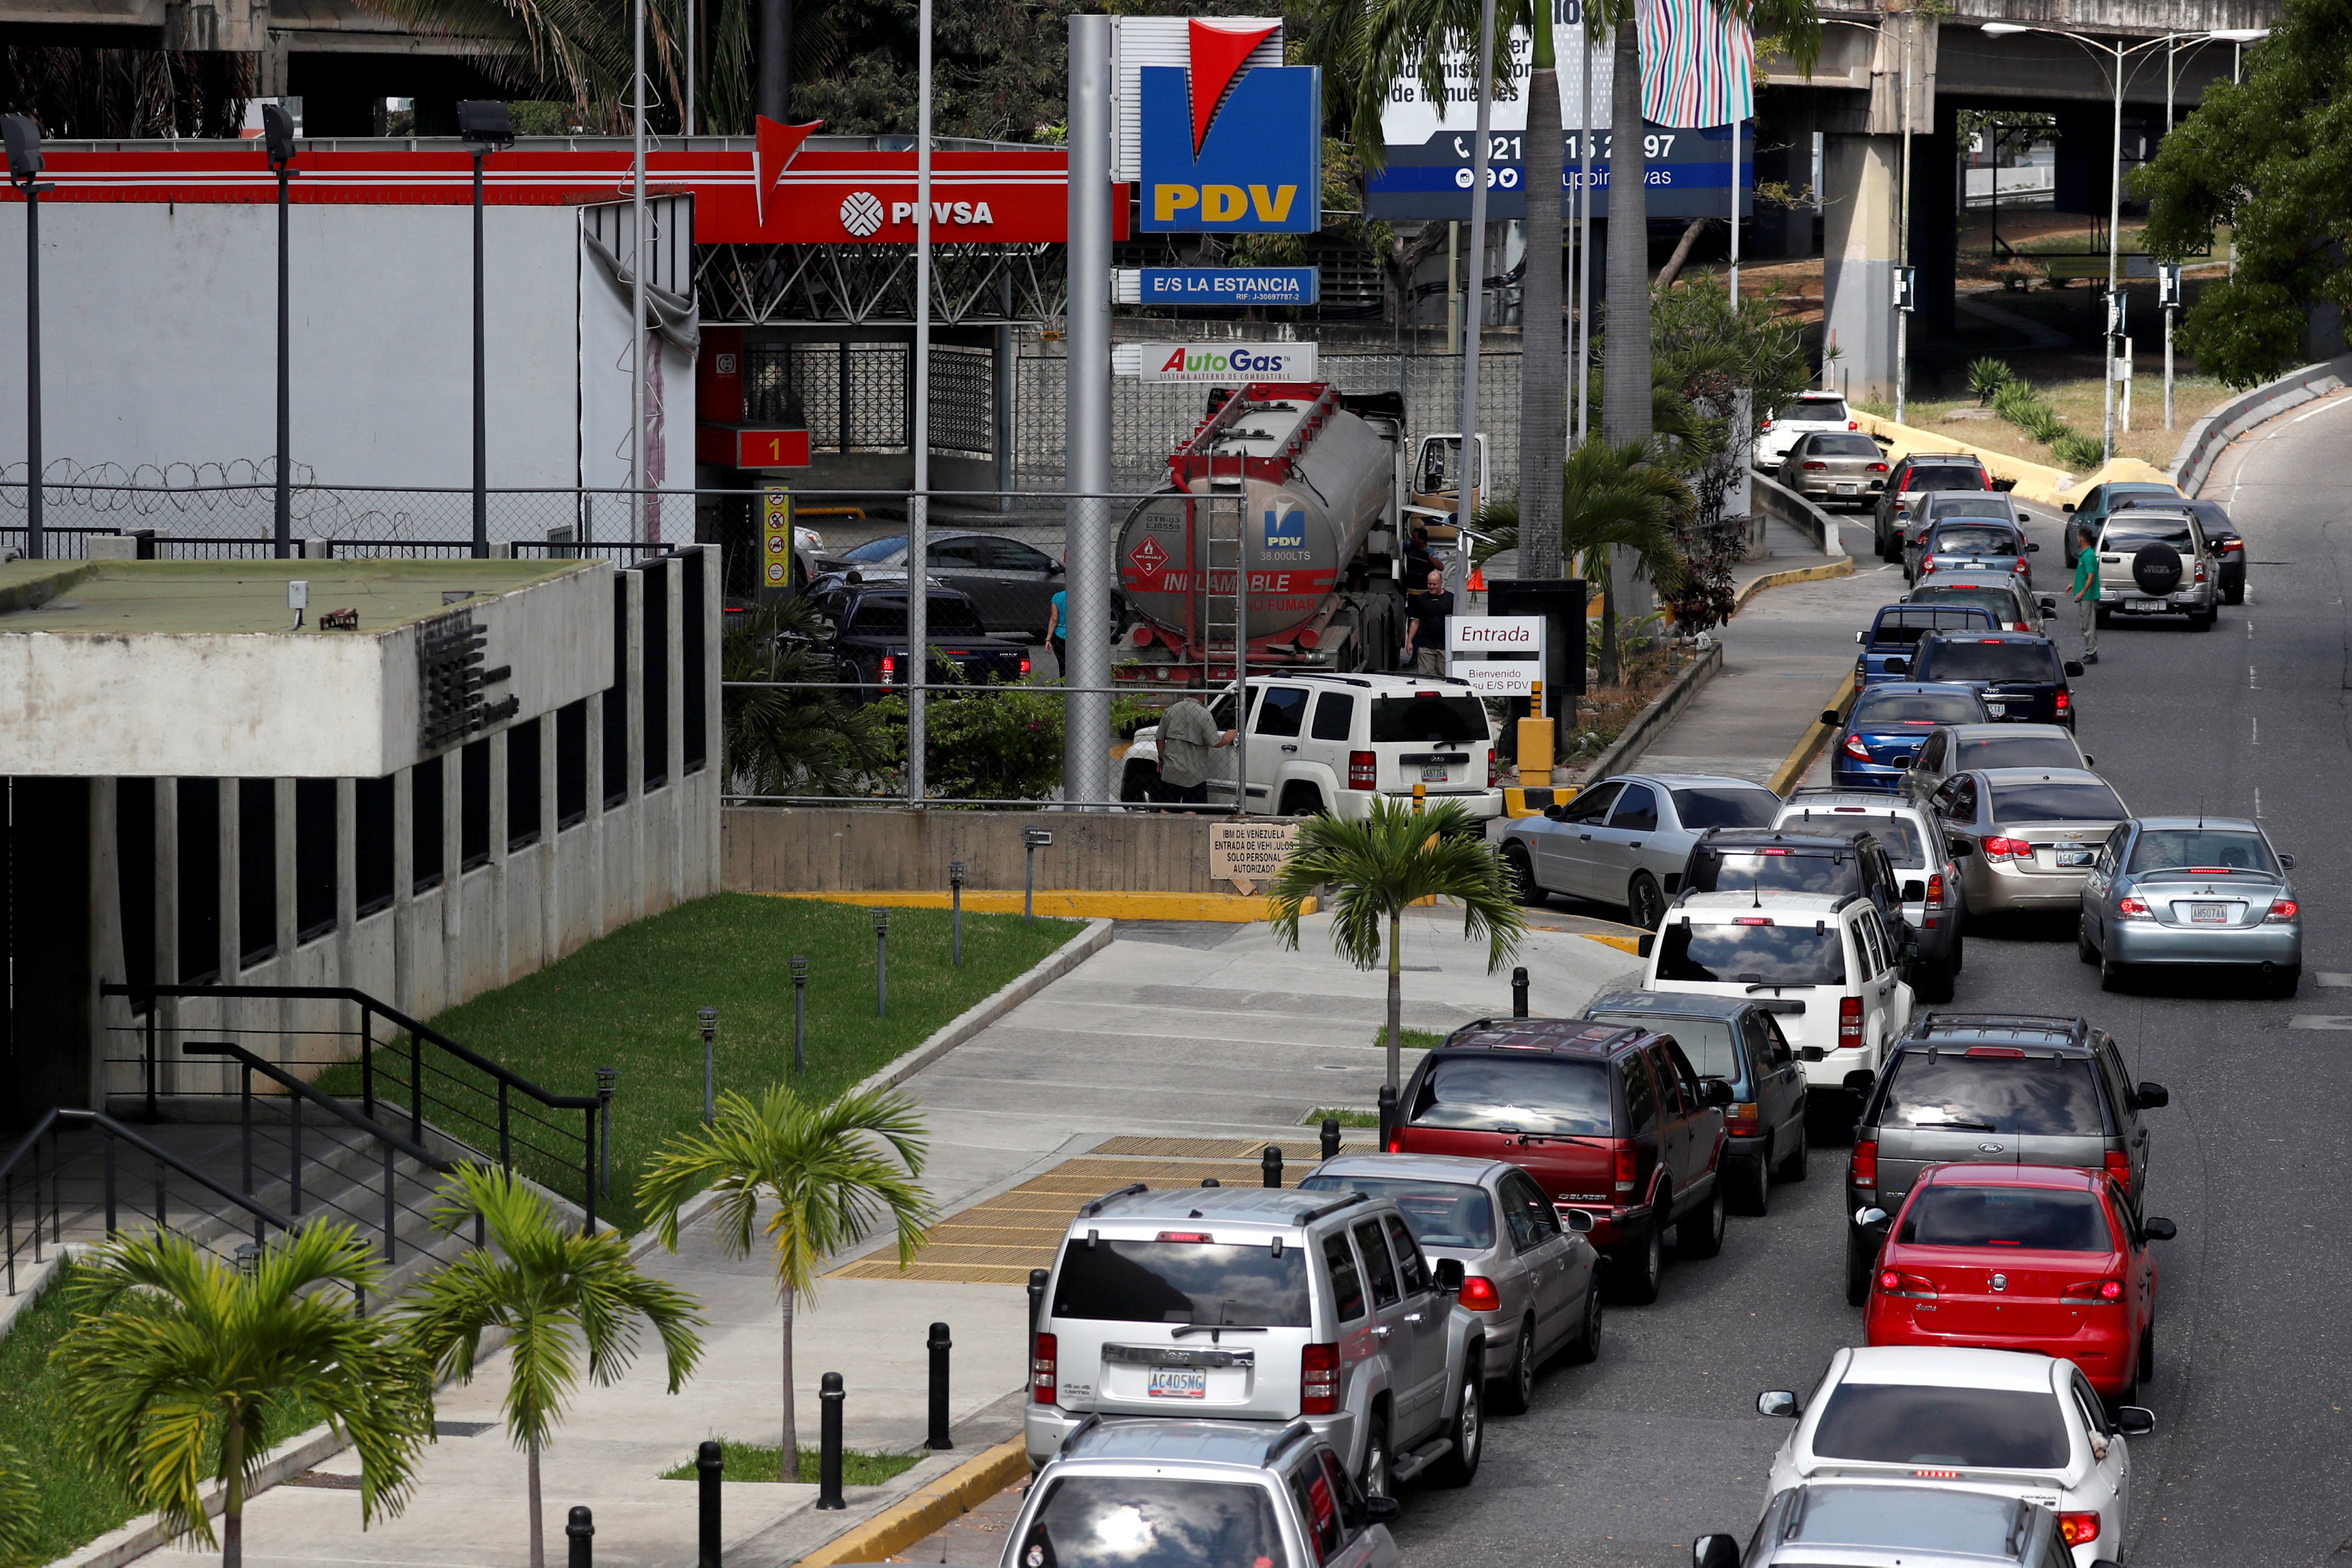 Conseguir gasolina… otra odisea para los venezolanos en medio del caos por apagón (fotos y videos)